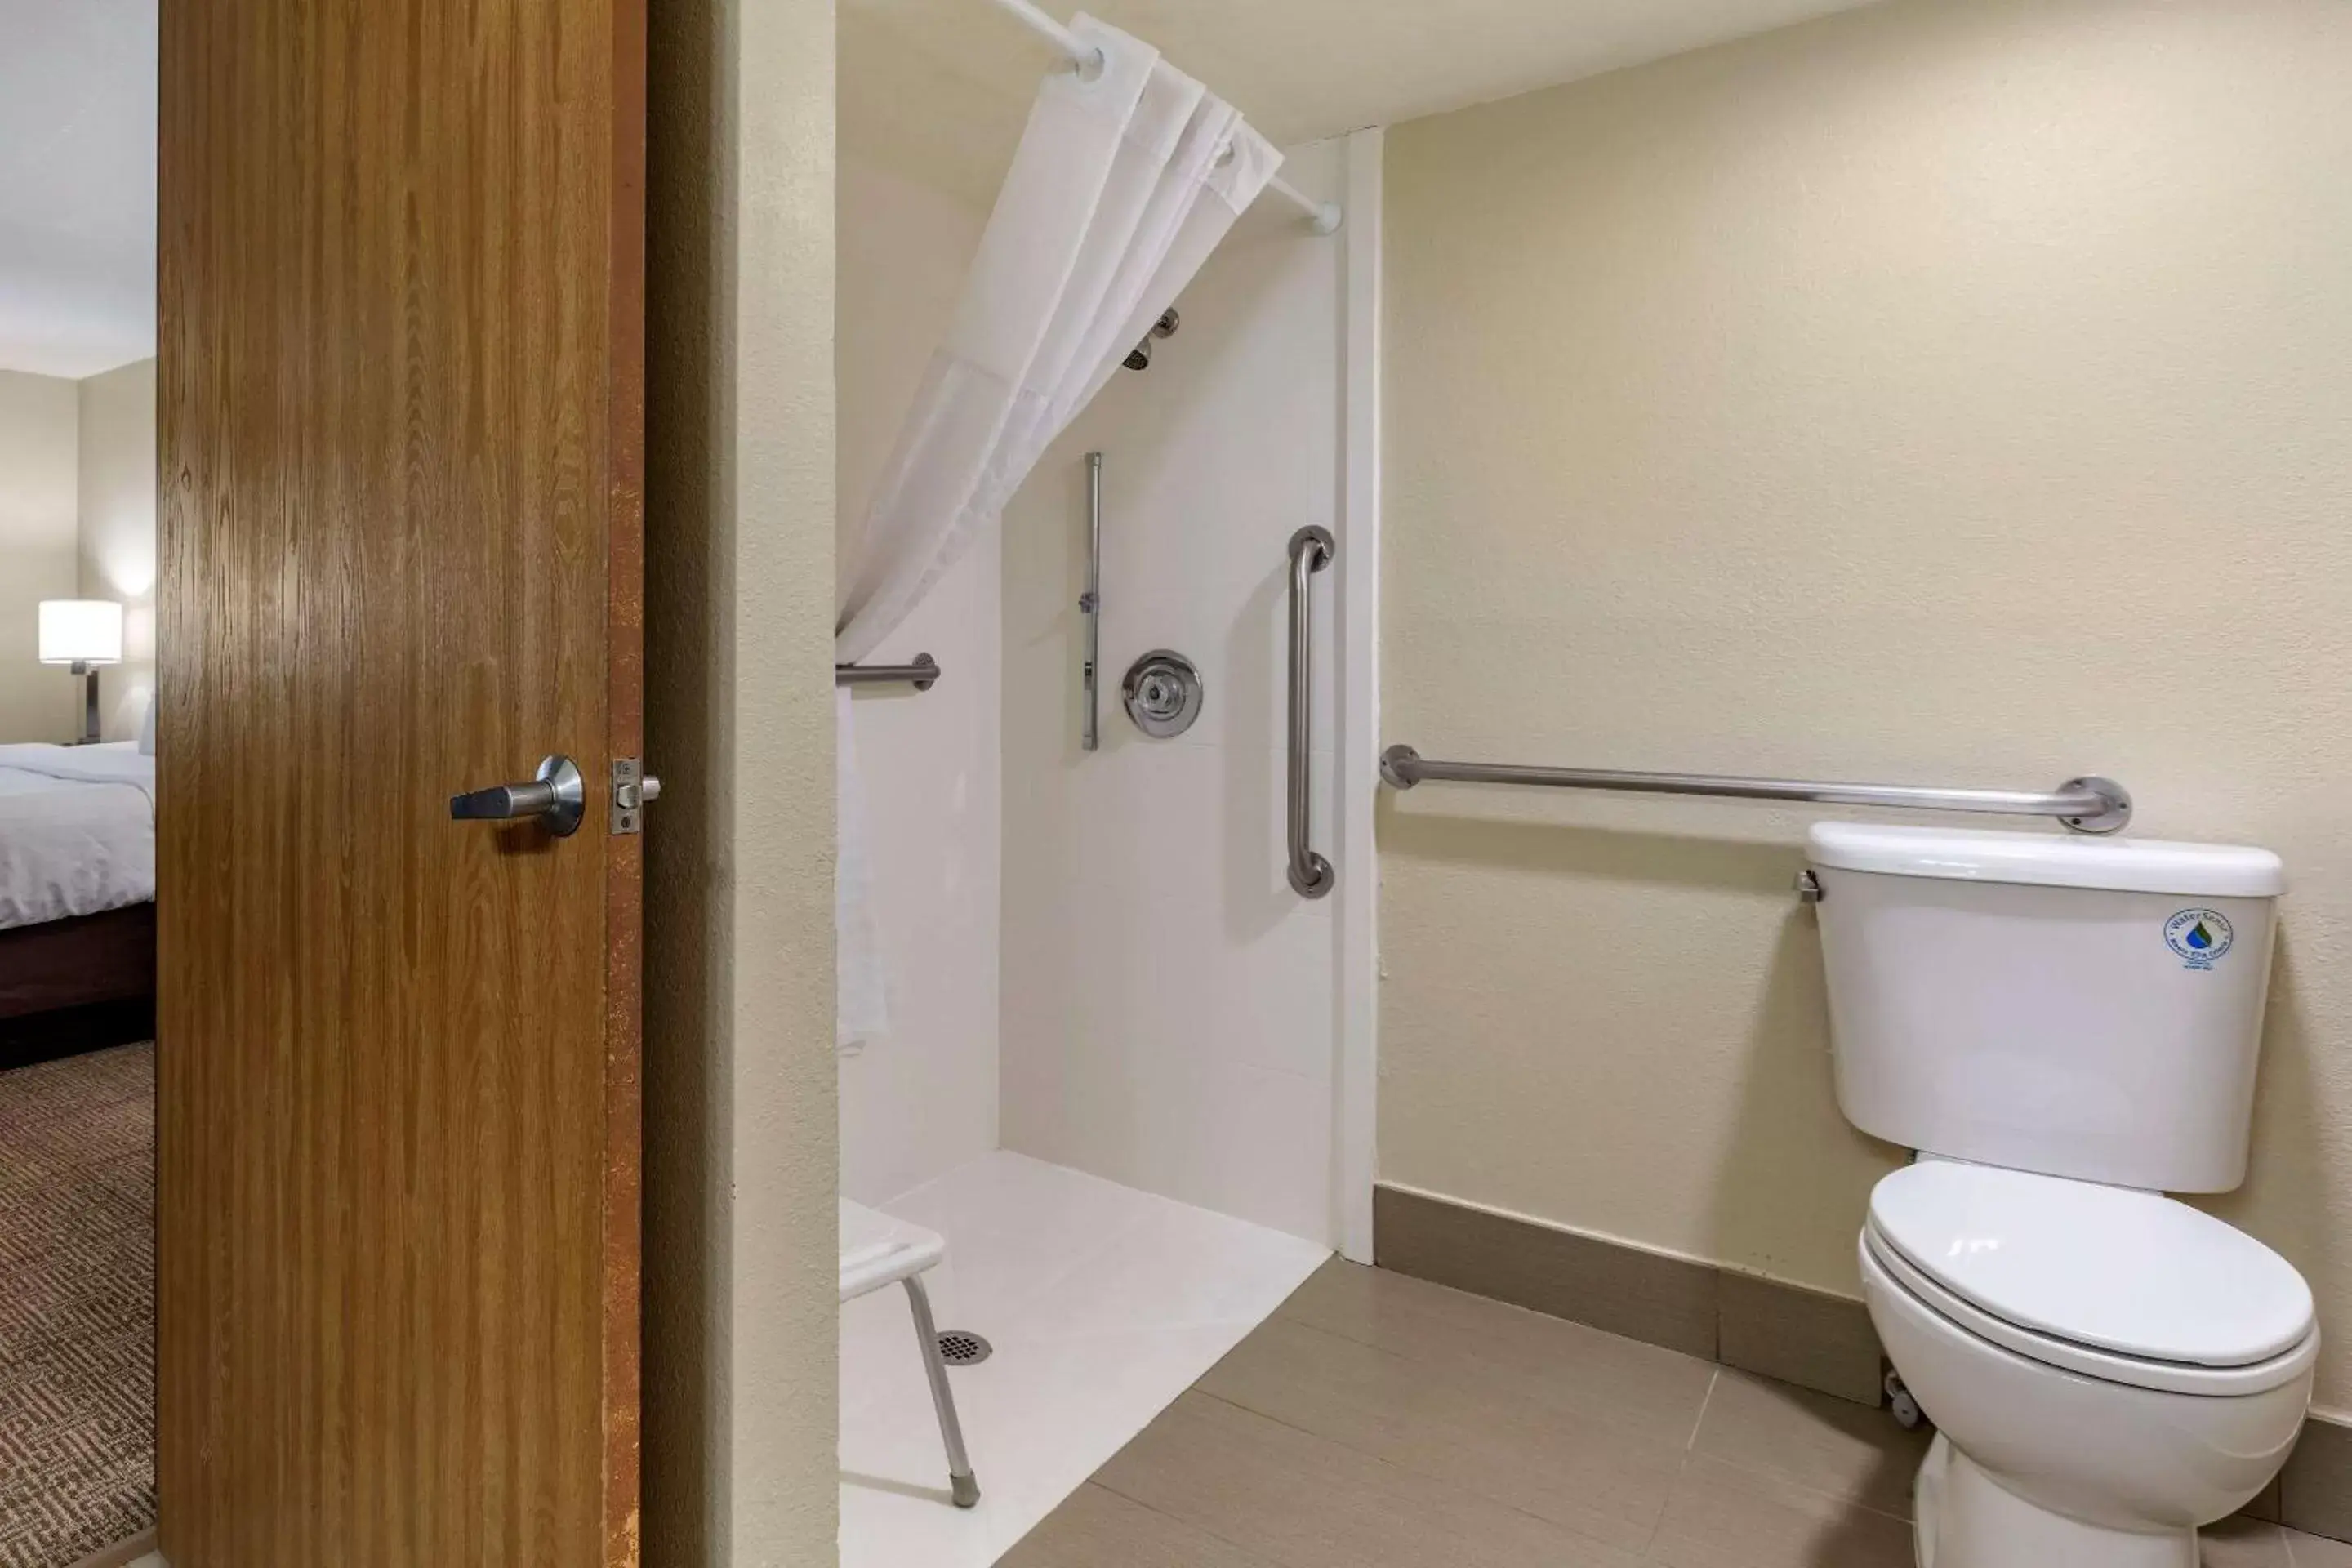 Bedroom, Bathroom in Comfort Inn & Suites Albuquerque Downtown